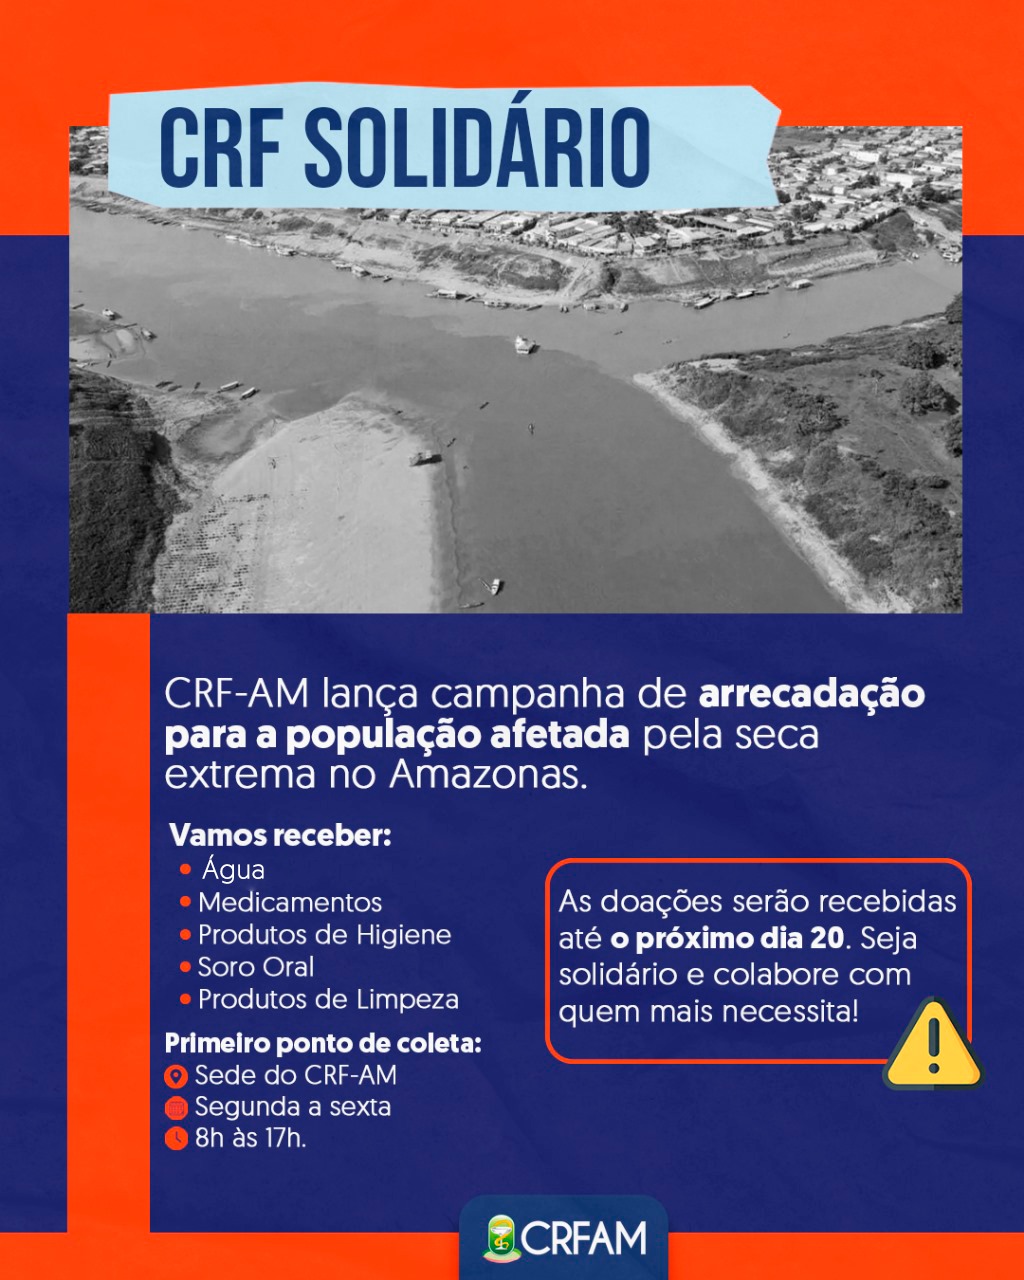 CRF-AM lança campanha de arrecadação para a população afetada pela seca no Amazonas 